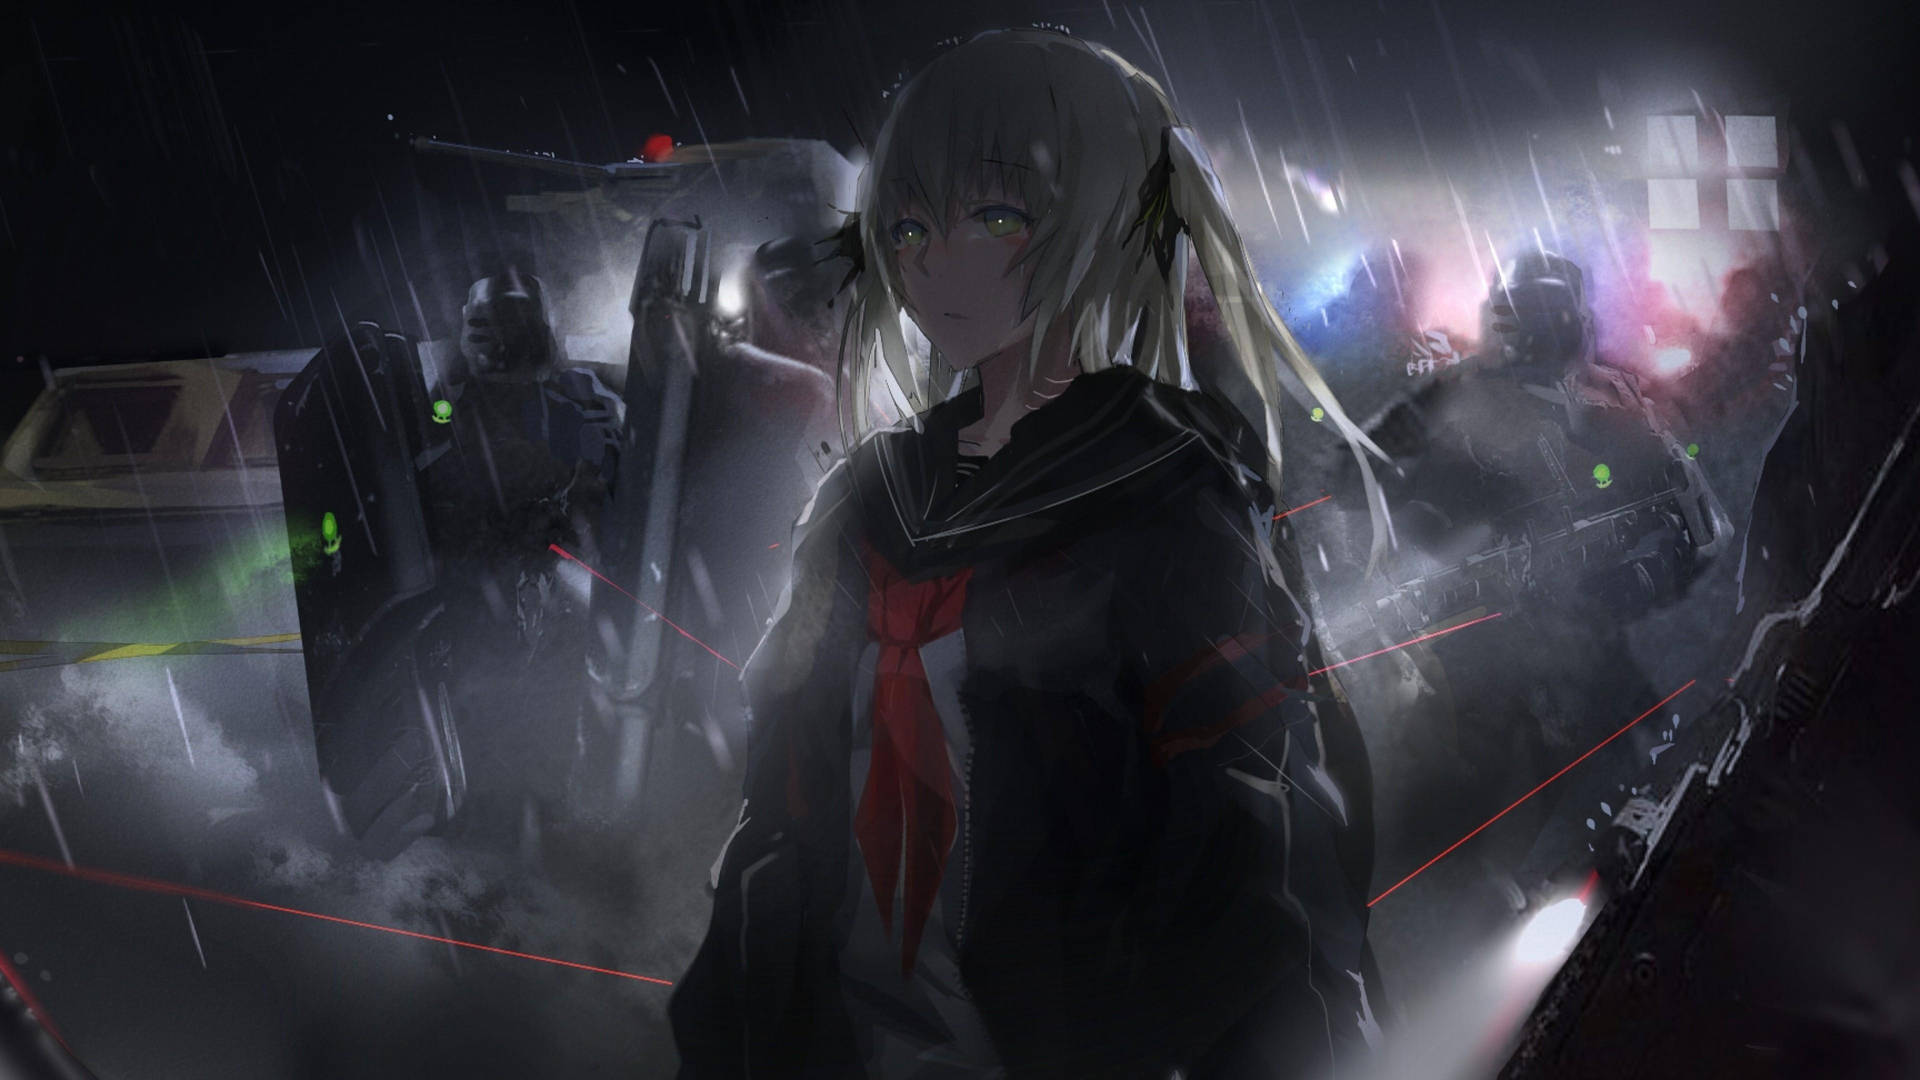 Dark Anime Sora In The Rain Background